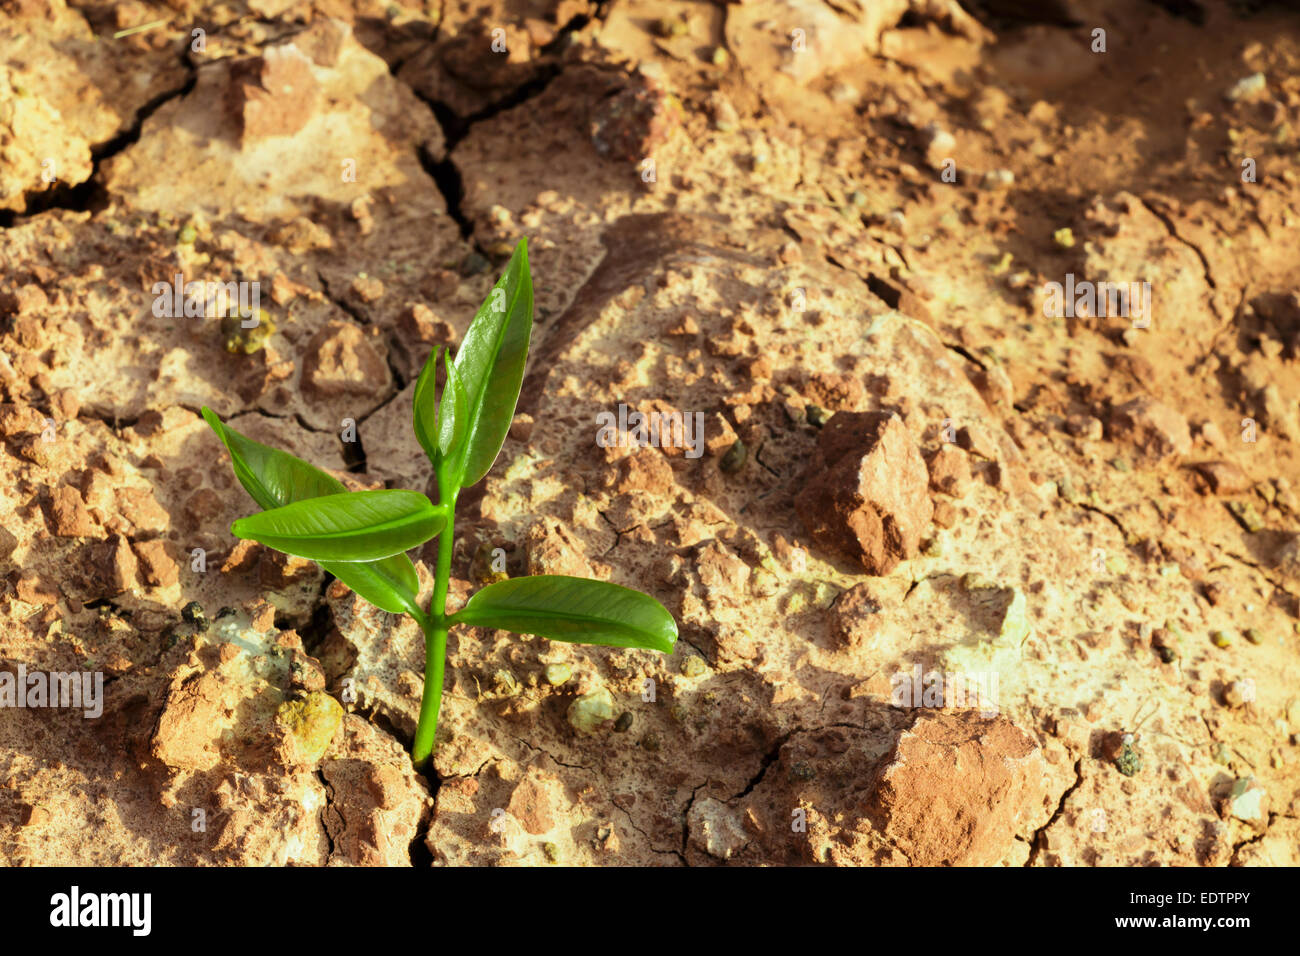 Le Sprout survivre sur l'environnement dans les zones arides sol fissuré Banque D'Images